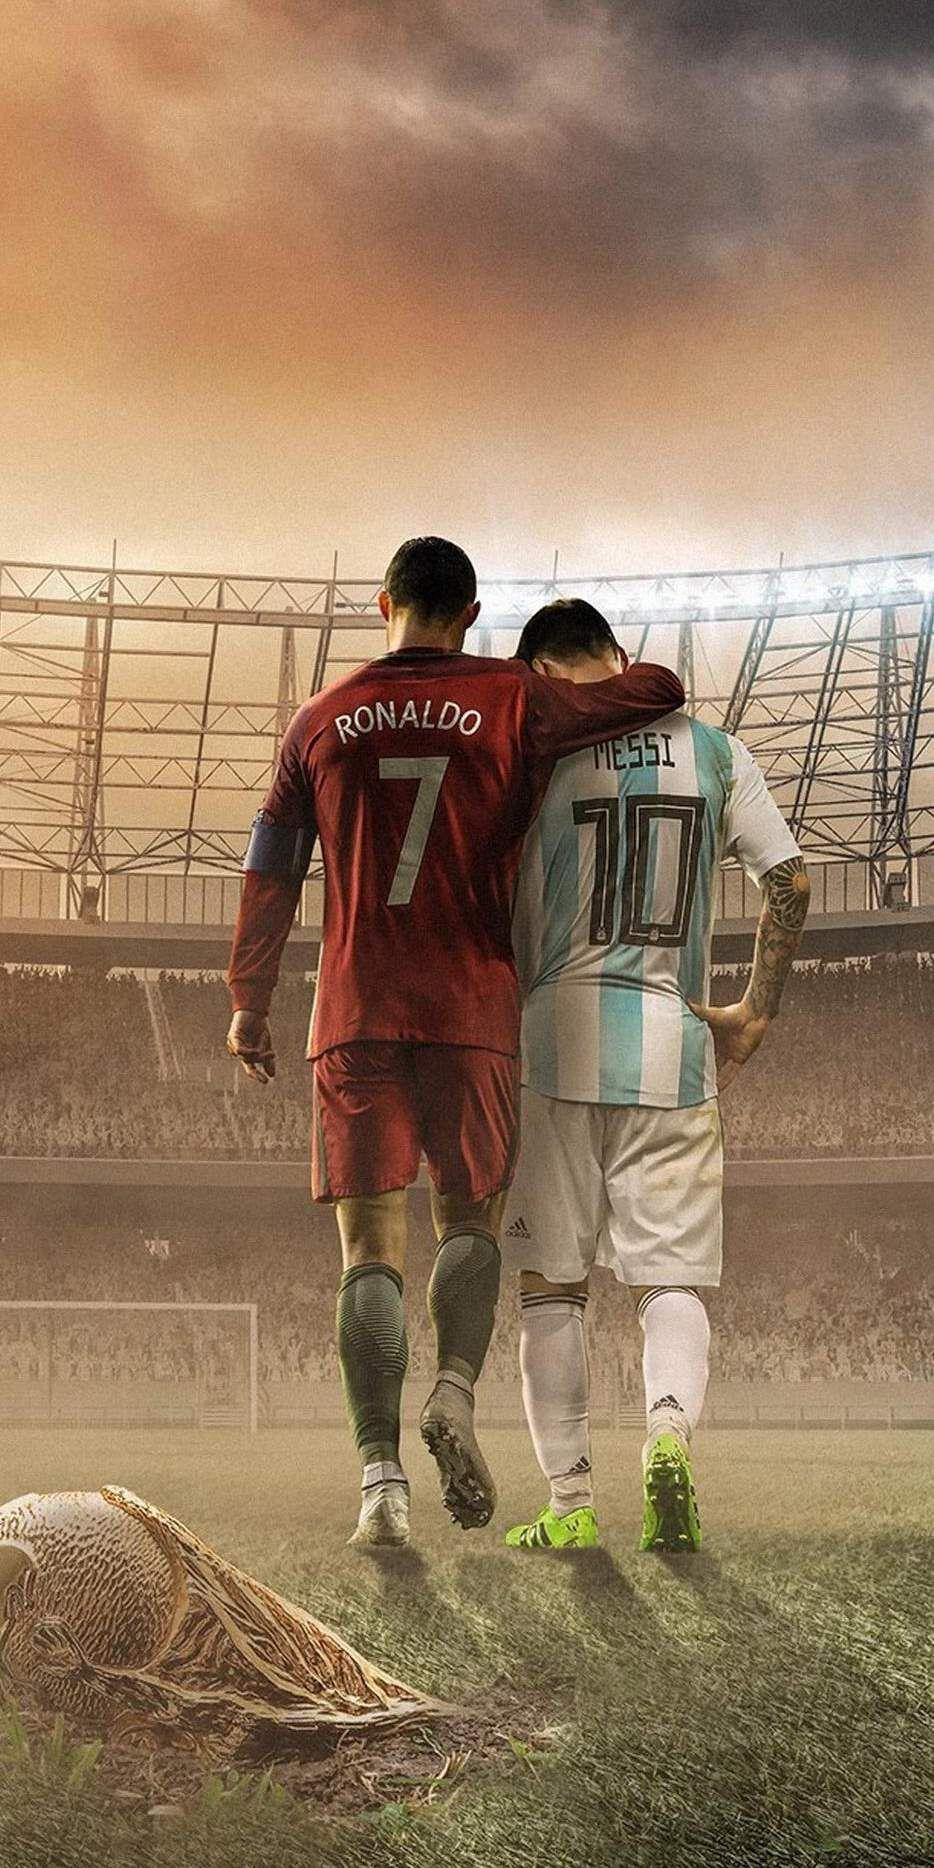 Siêu sao Messi và Cristiano Ronaldo đều là những cầu thủ đỉnh cao không chỉ trong lịch sử bóng đá mà còn trong nền văn hóa thể thao. Xem ảnh liên quan để thấy sự so sánh tuyệt vời giữa hai cầu thủ tài năng nhất hành tinh.